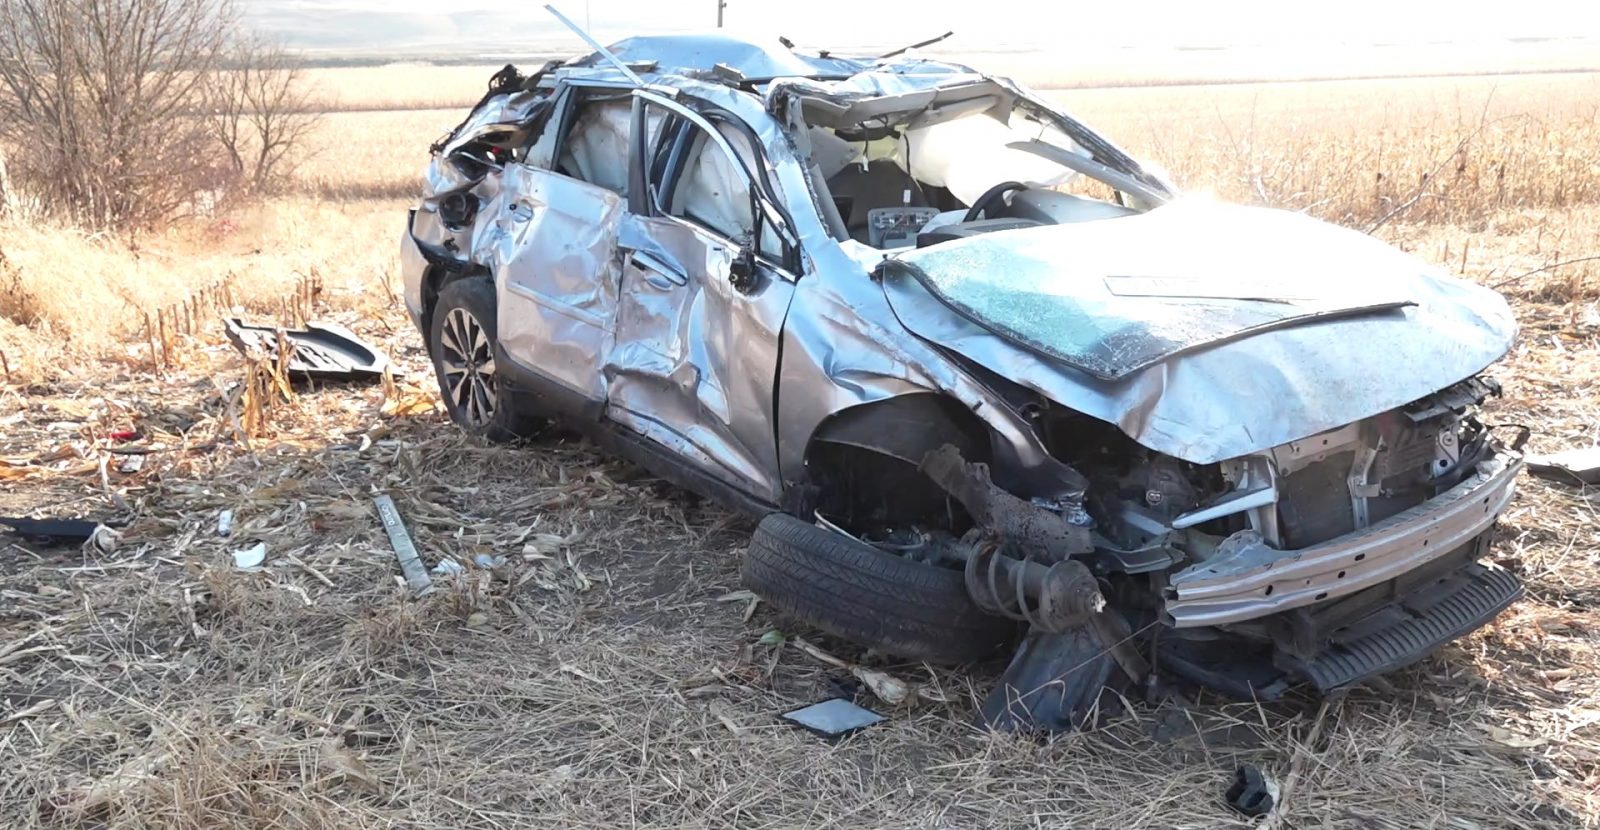 /VIDEO/ Noi detalii în cazul accidentului cumplit de pe traseul Bălți-Rîșcani